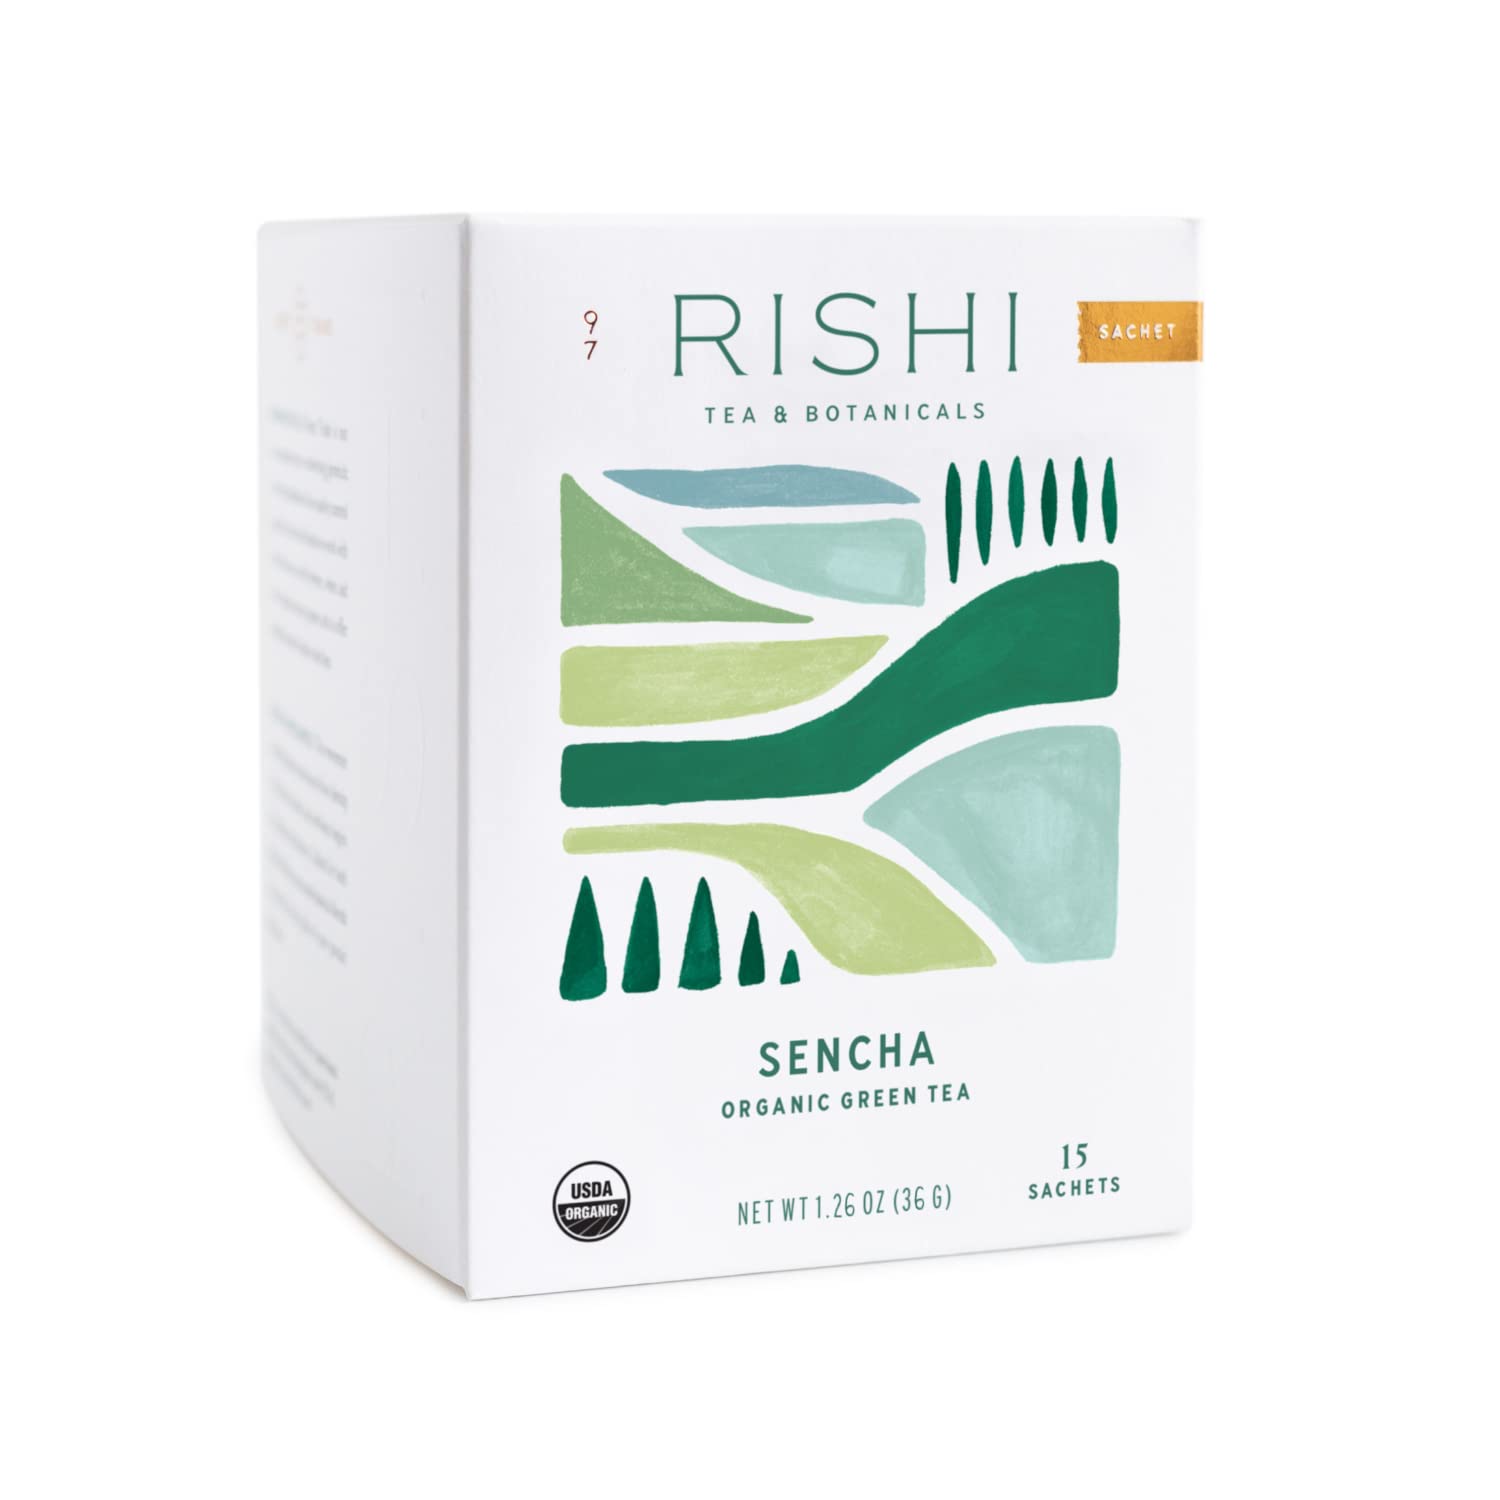 Rishi Sencha Organic Green Tea